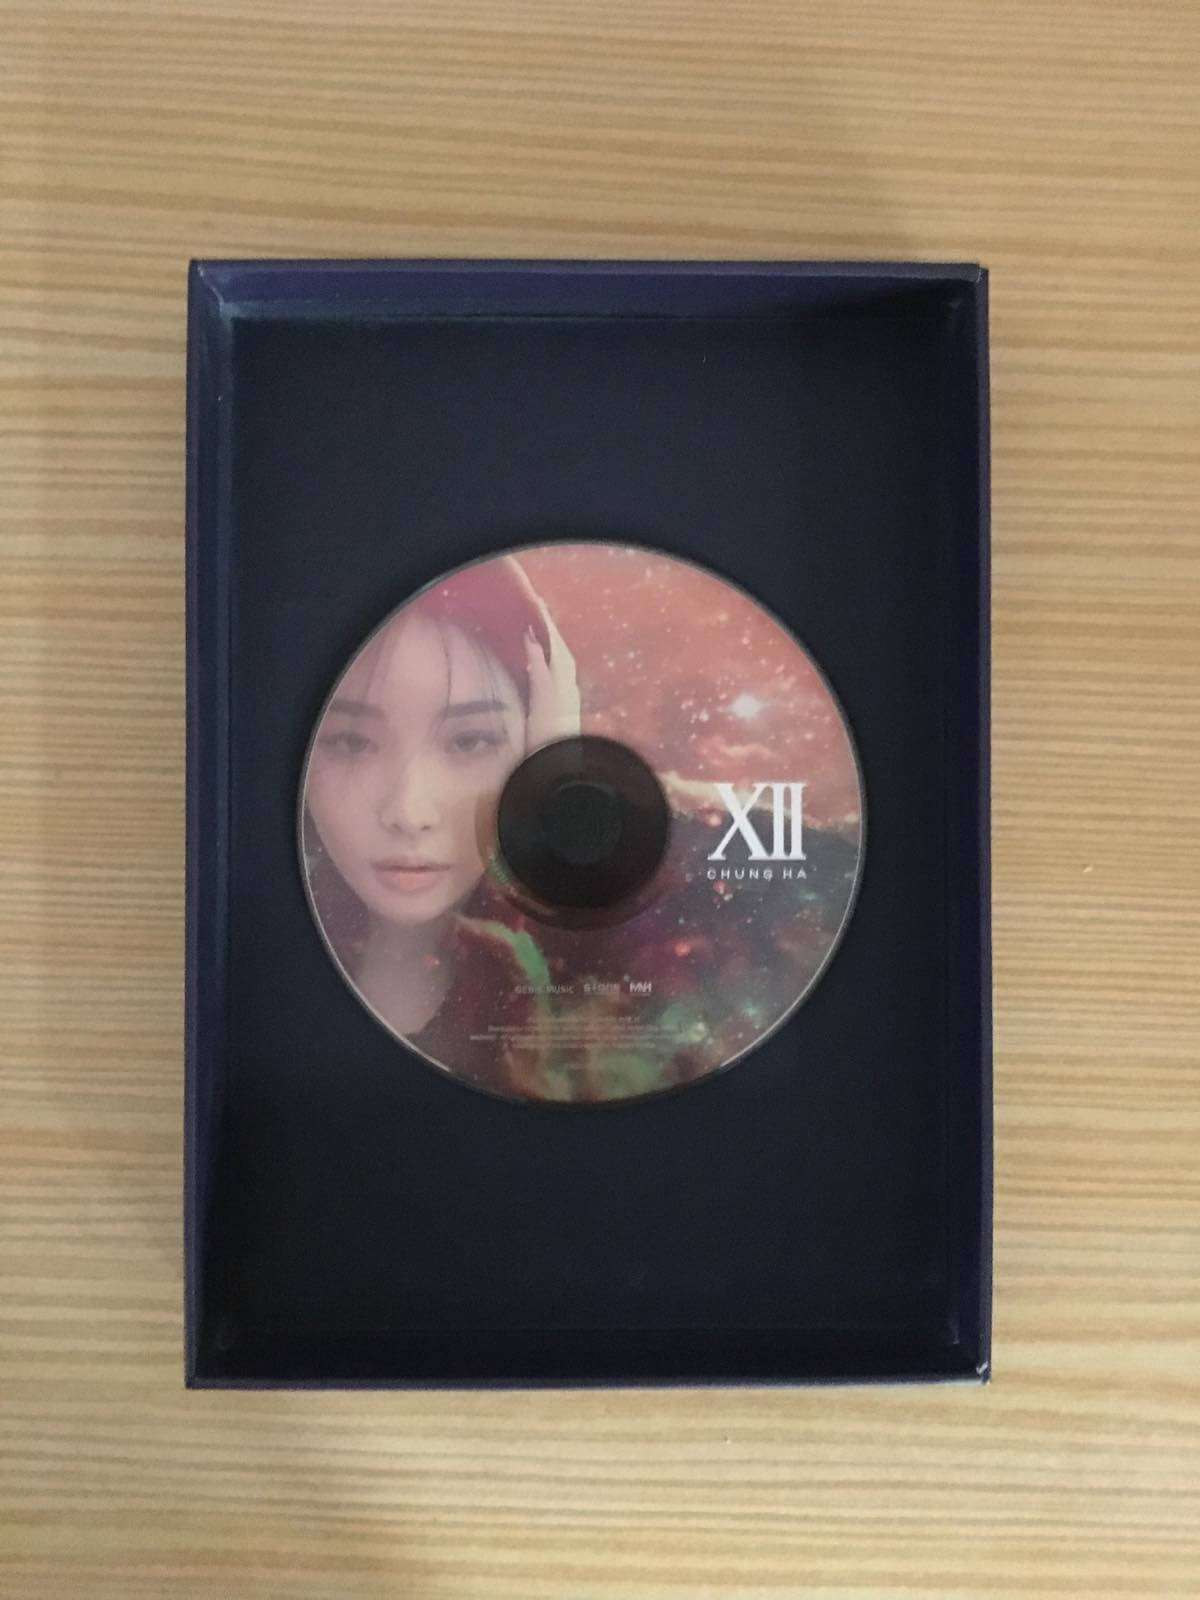 Chungha - Álbum Single "XII" Análise K-Pop — ptAnime